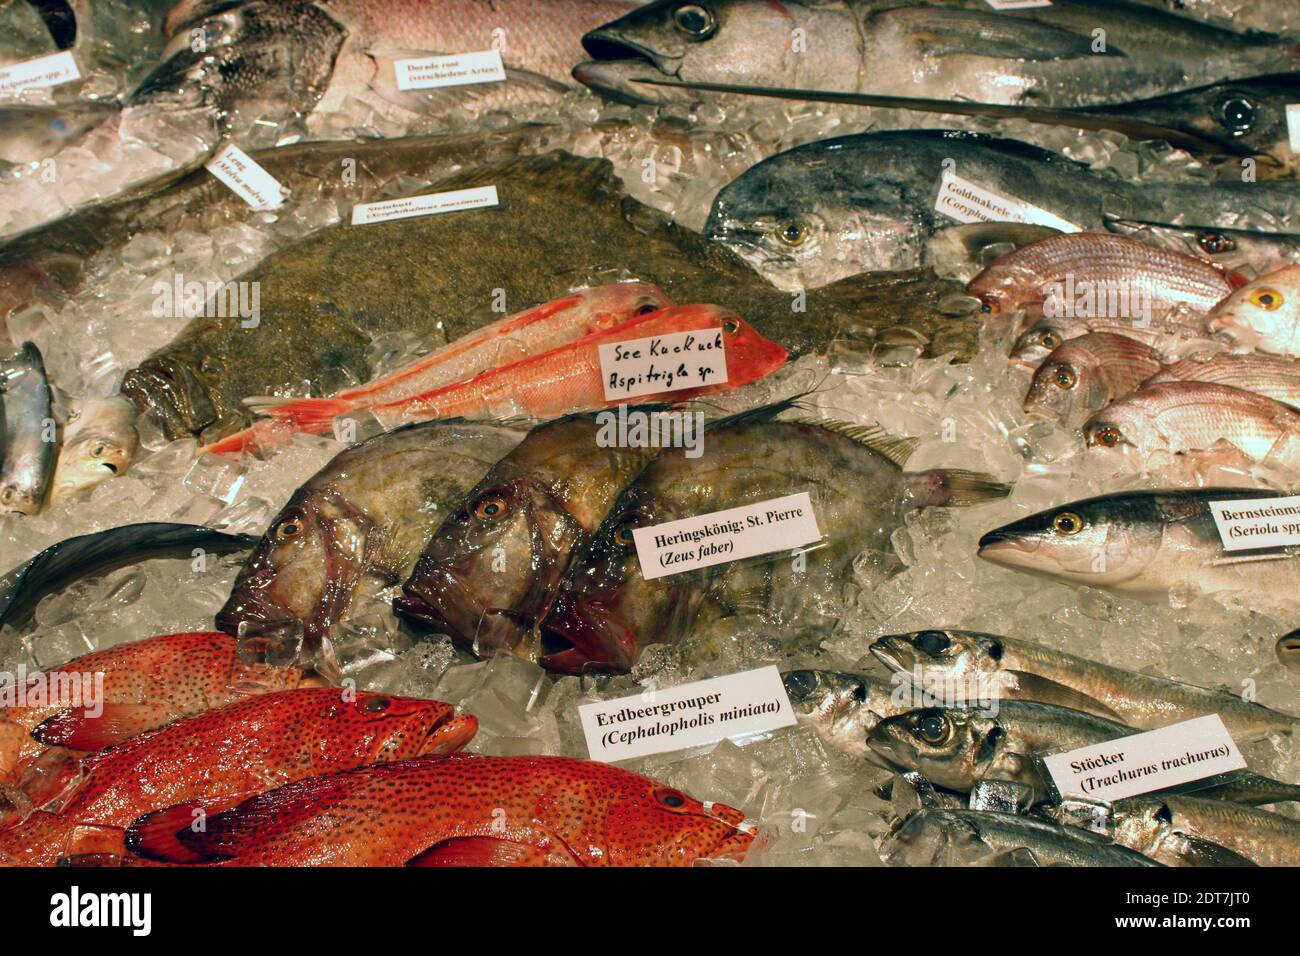 Salzwasserfische im Eis, Deutschland Stockfoto